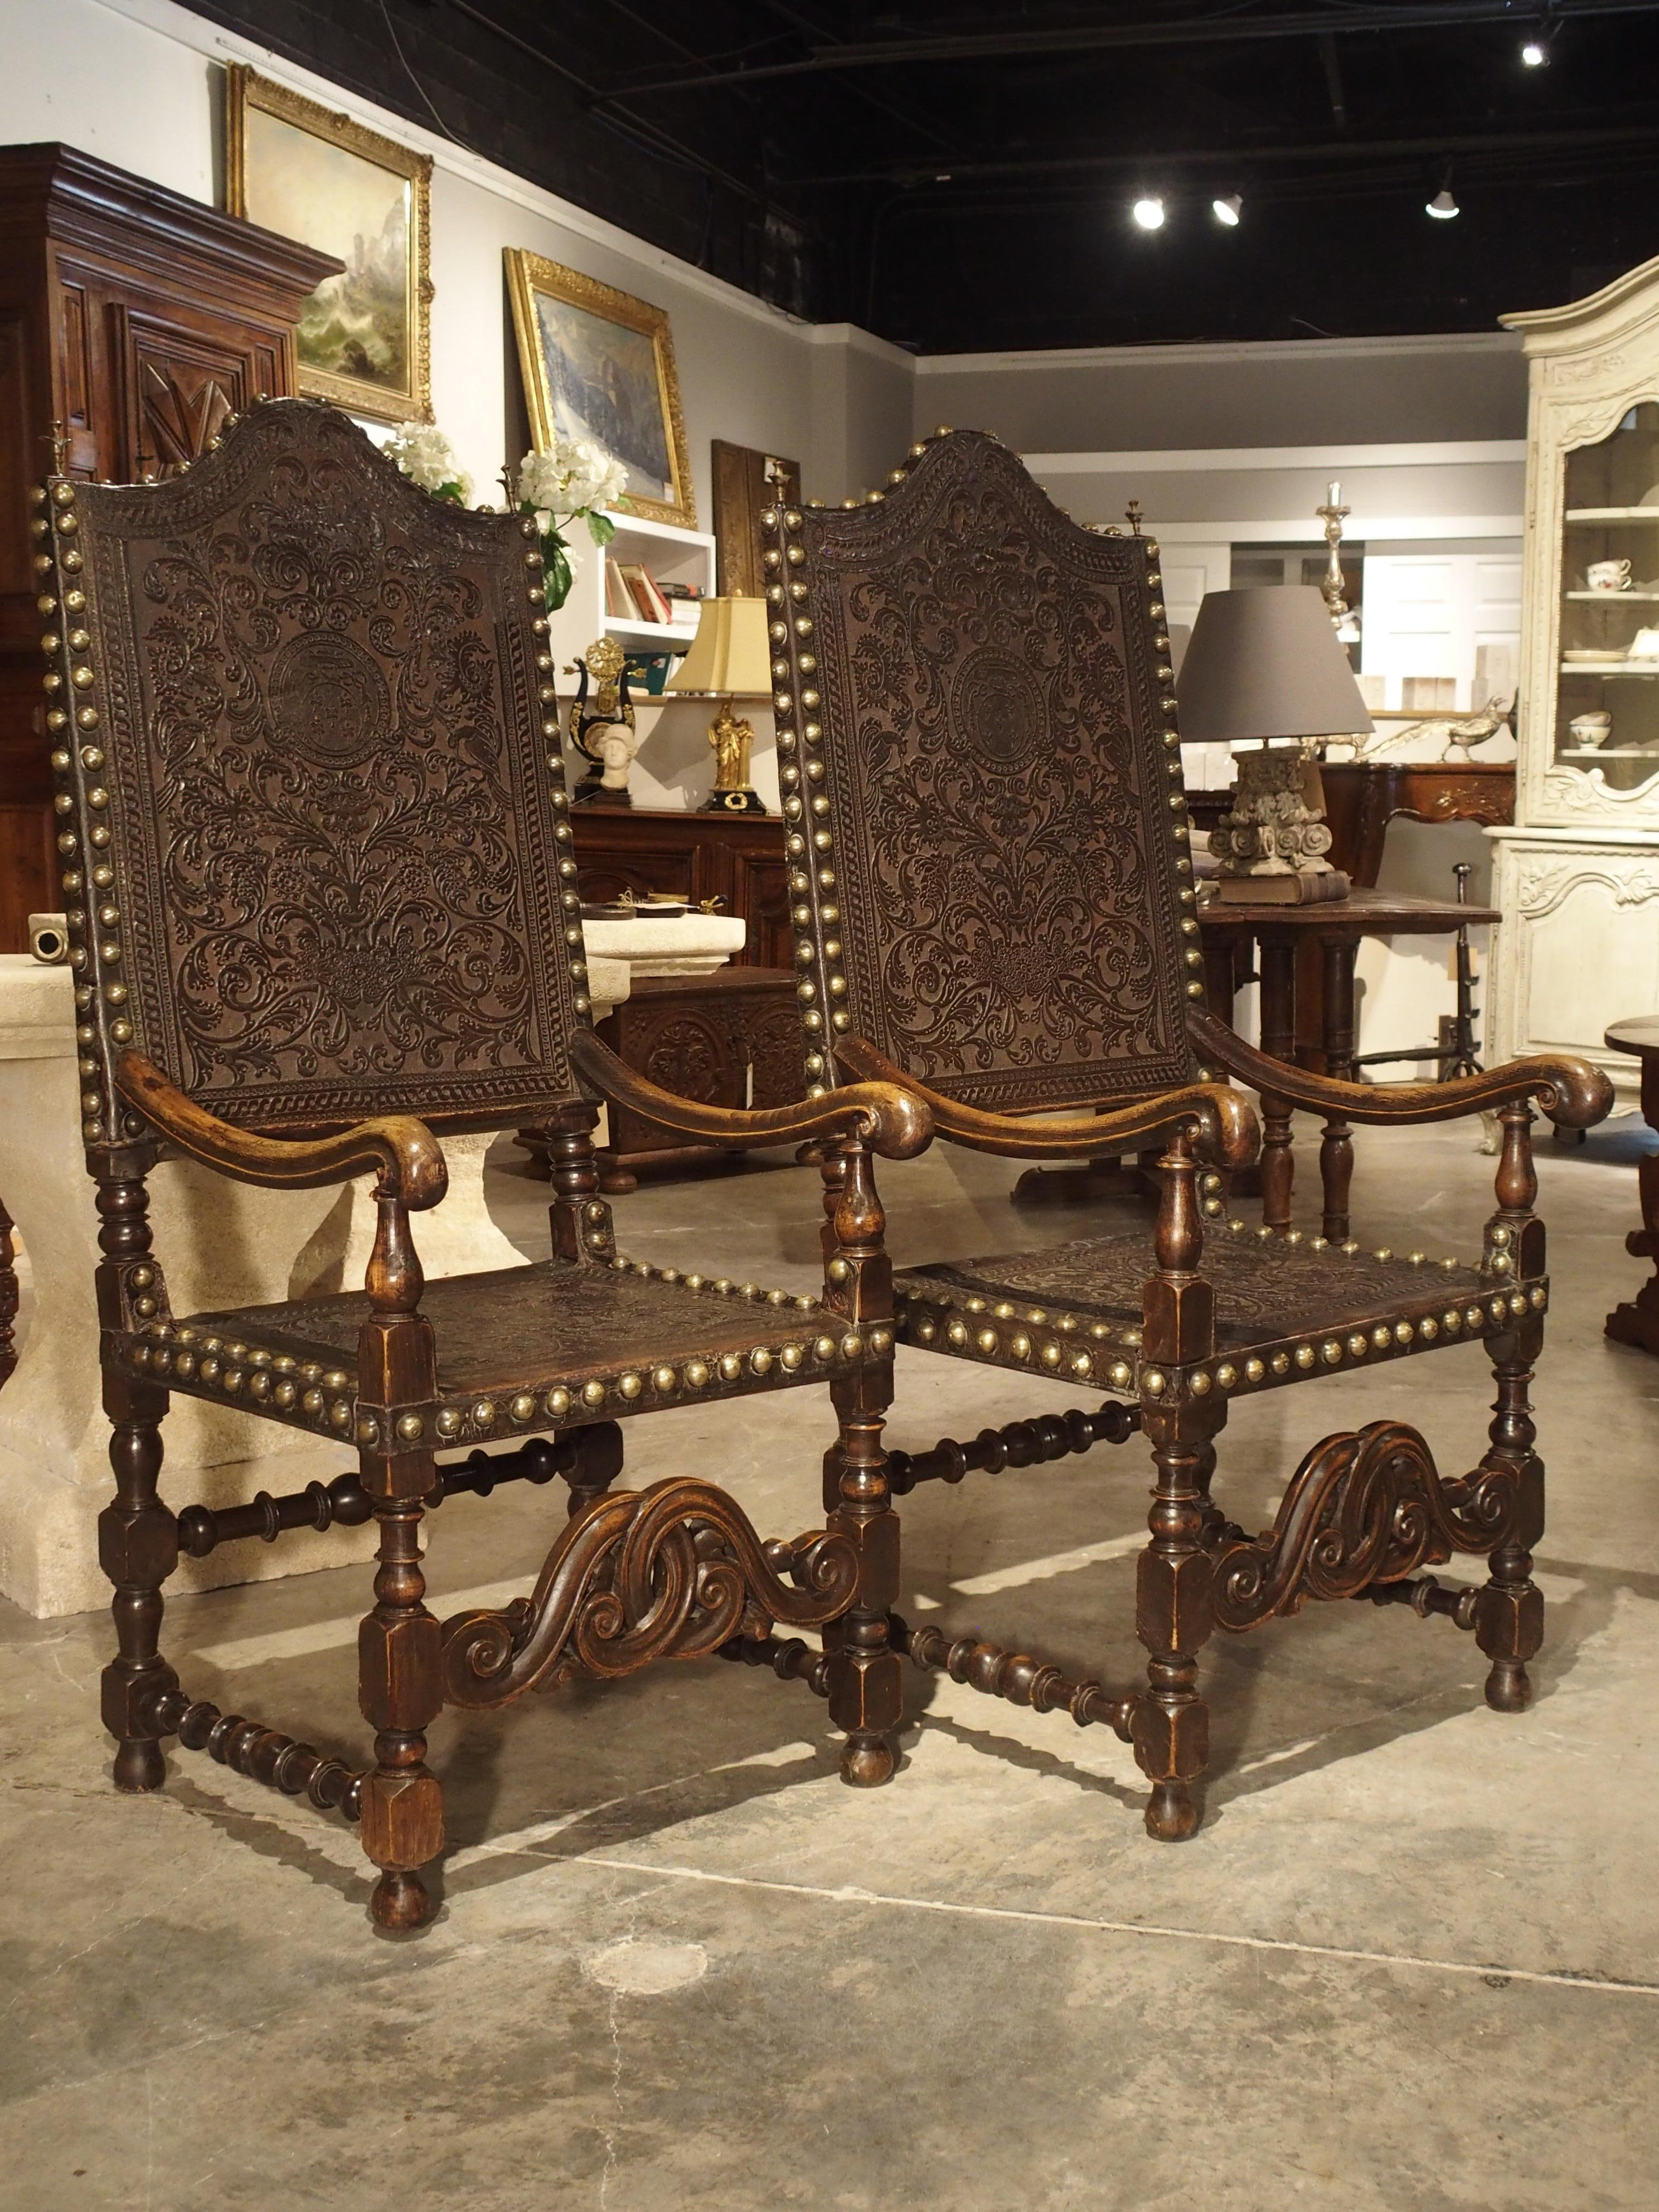 Renaissance Paire de grands fauteuils en chêne et cuir truffé du XVIIe siècle:: Espagne